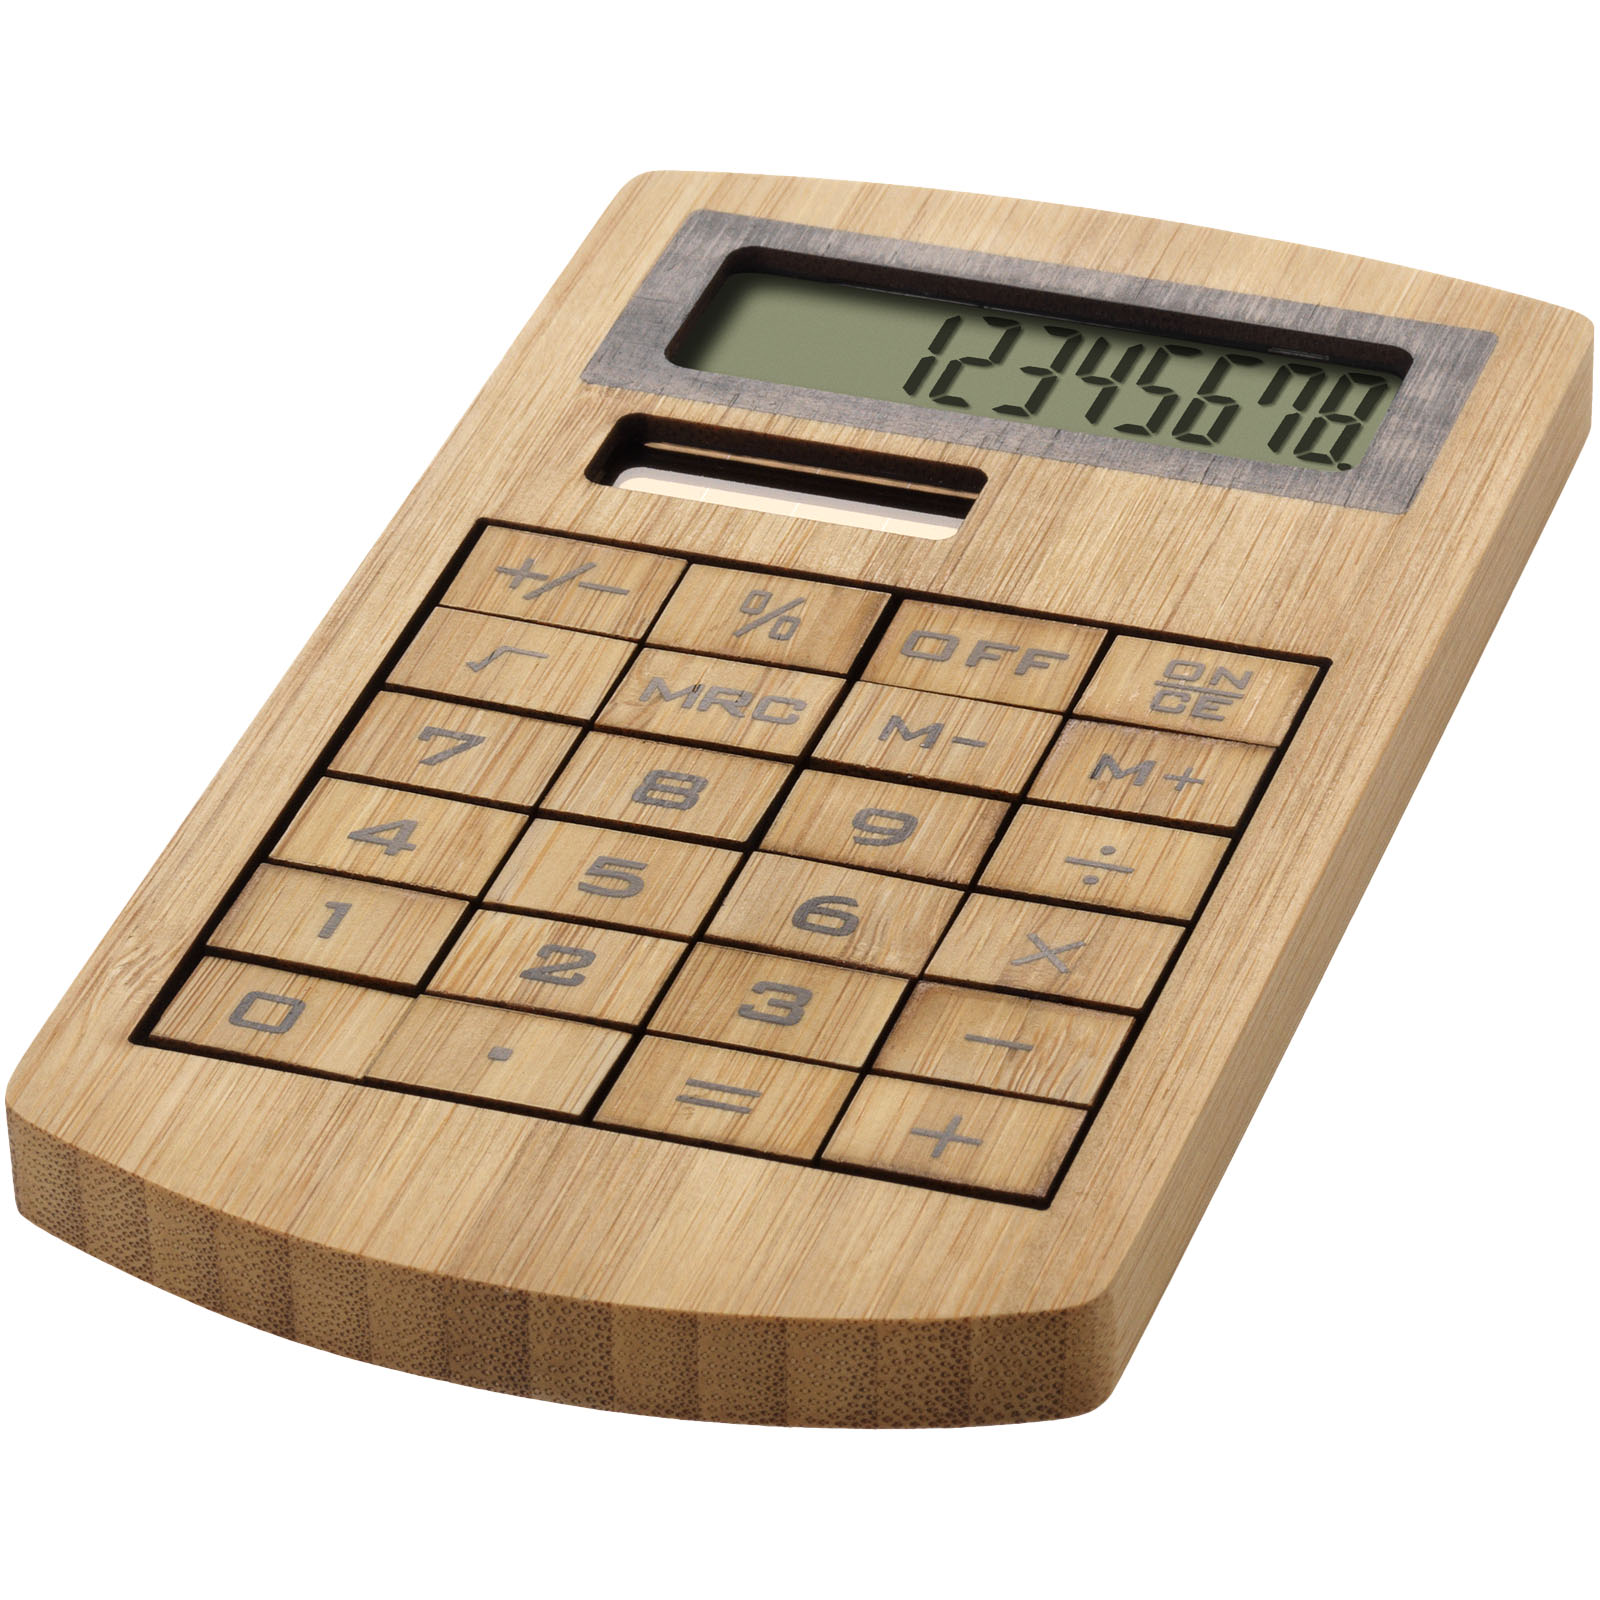 Calculatrice personnalisée en Bambou - Isabella - Zaprinta France